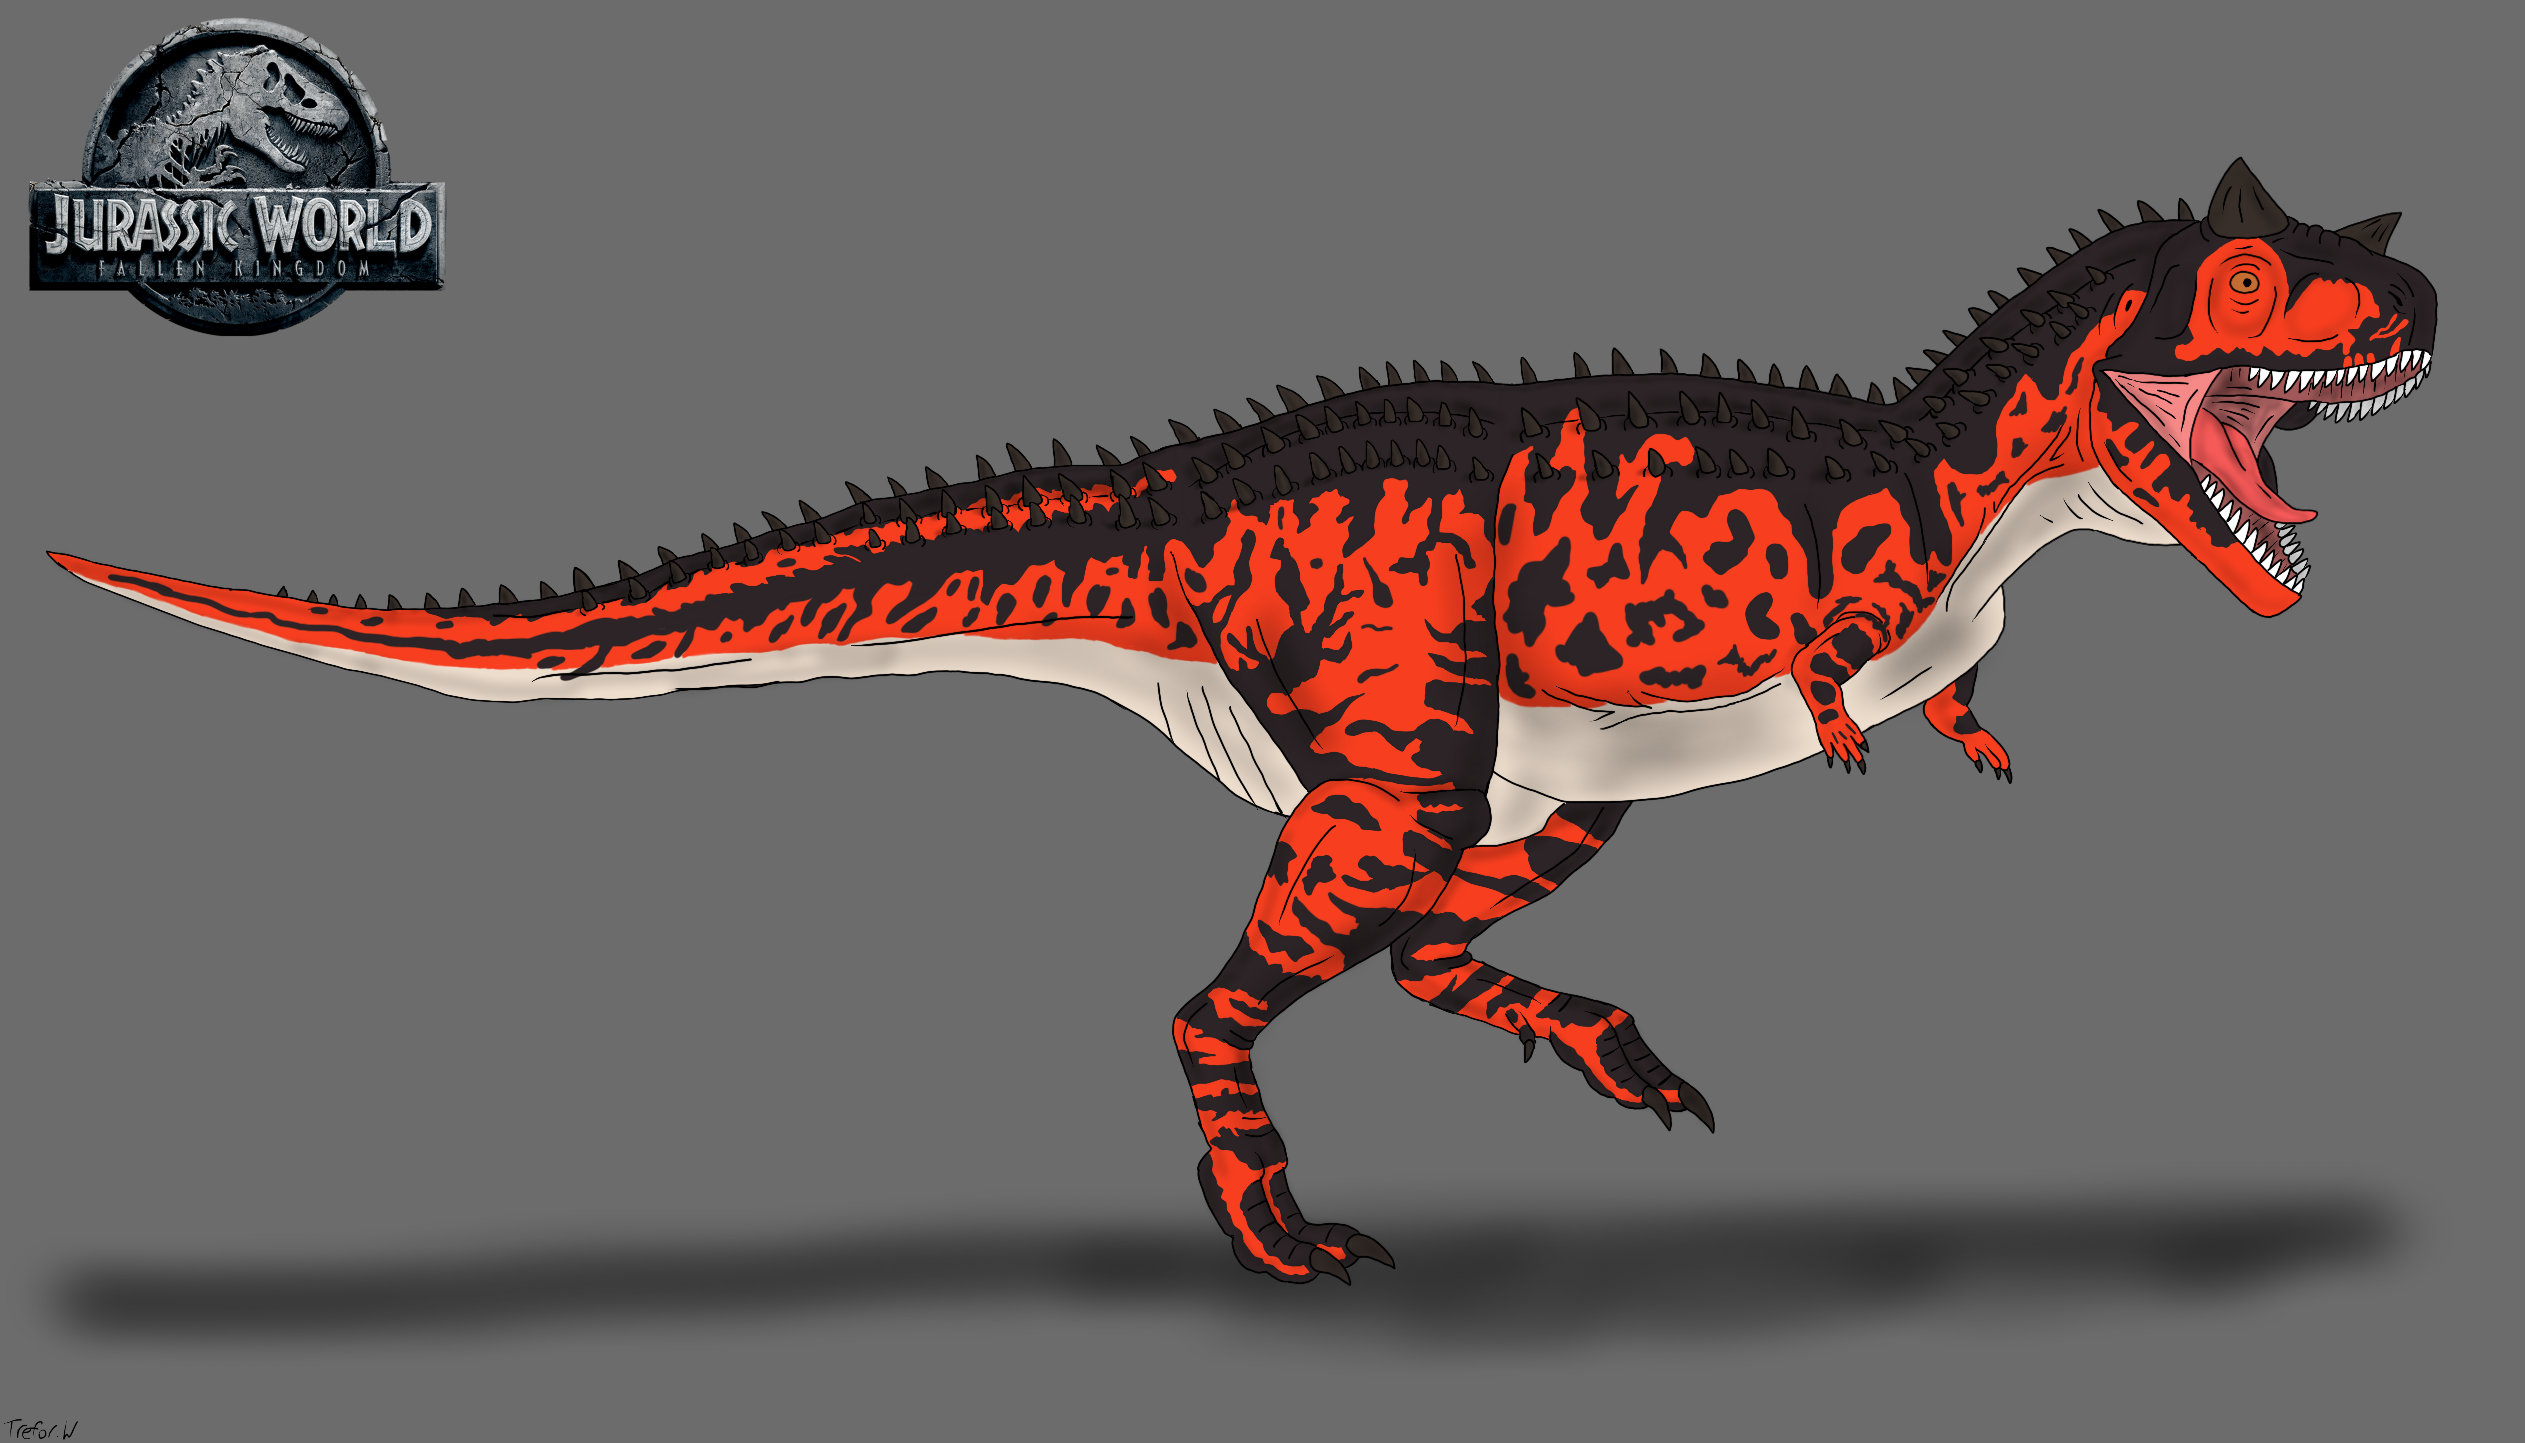 Jurassic World: Fallen Kingdom - Carnotaurus by TrefRex on DeviantArt